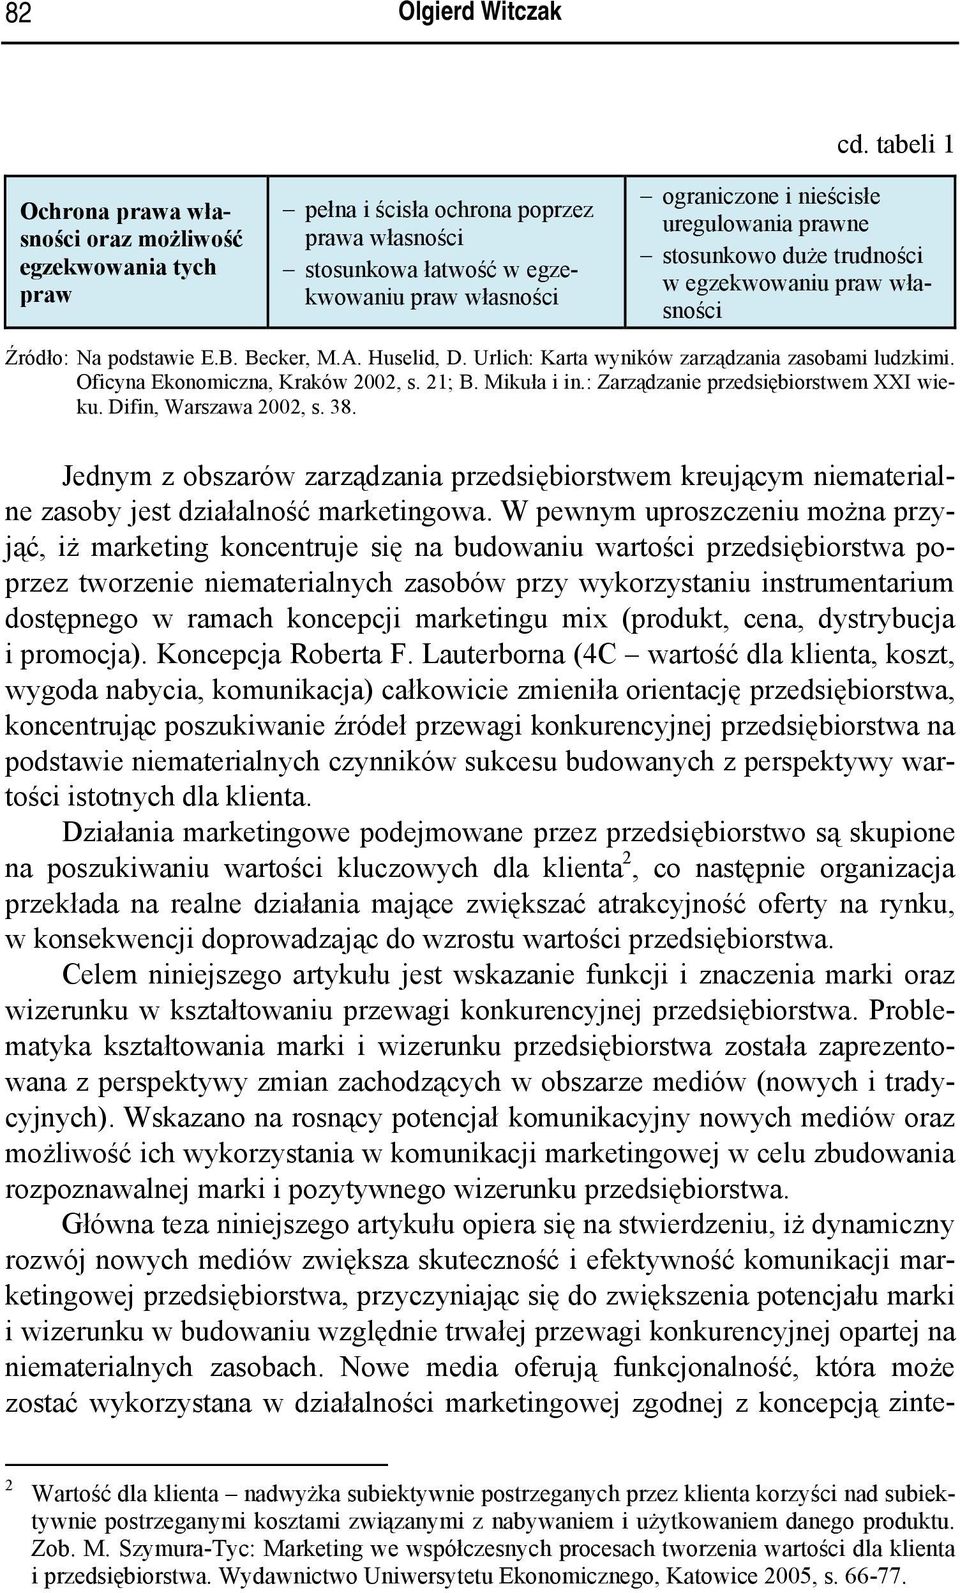 Urlich: Karta wyników zarządzania zasobami ludzkimi. Oficyna Ekonomiczna, Kraków 2002, s. 21; B. Mikuła i in.: Zarządzanie przedsiębiorstwem XXI wieku. Difin, Warszawa 2002, s. 38.